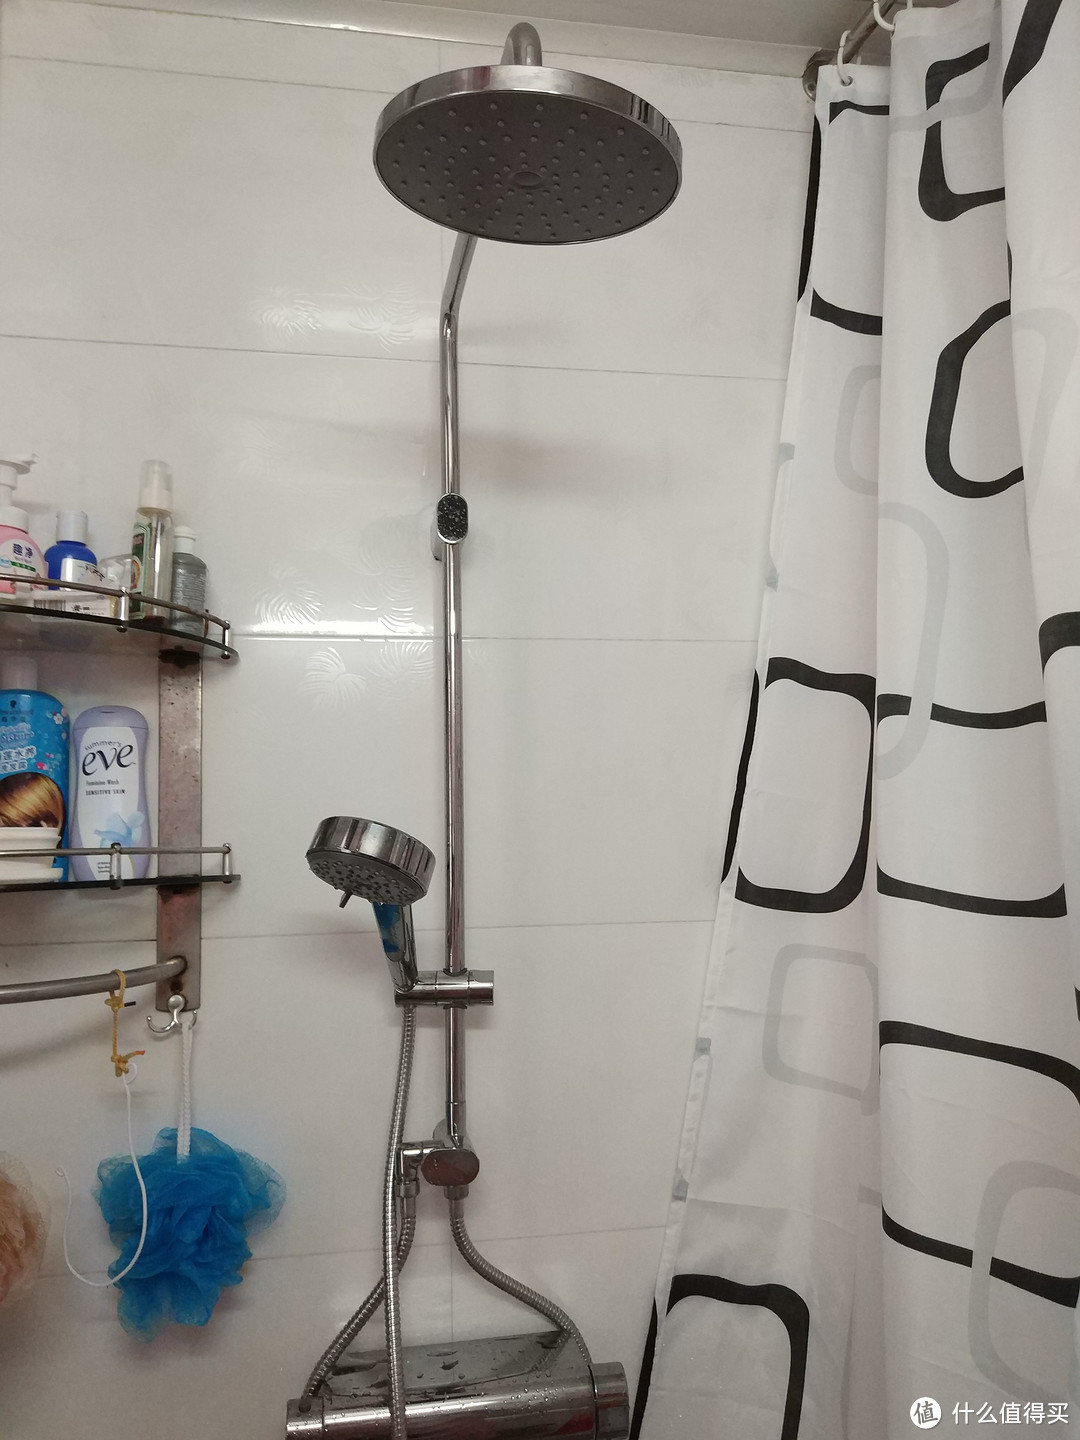 IKEA 宜家 BROGRUND 布鲁格隆德 花洒带恒温水混合器 淋浴系统购买和简单使用体验